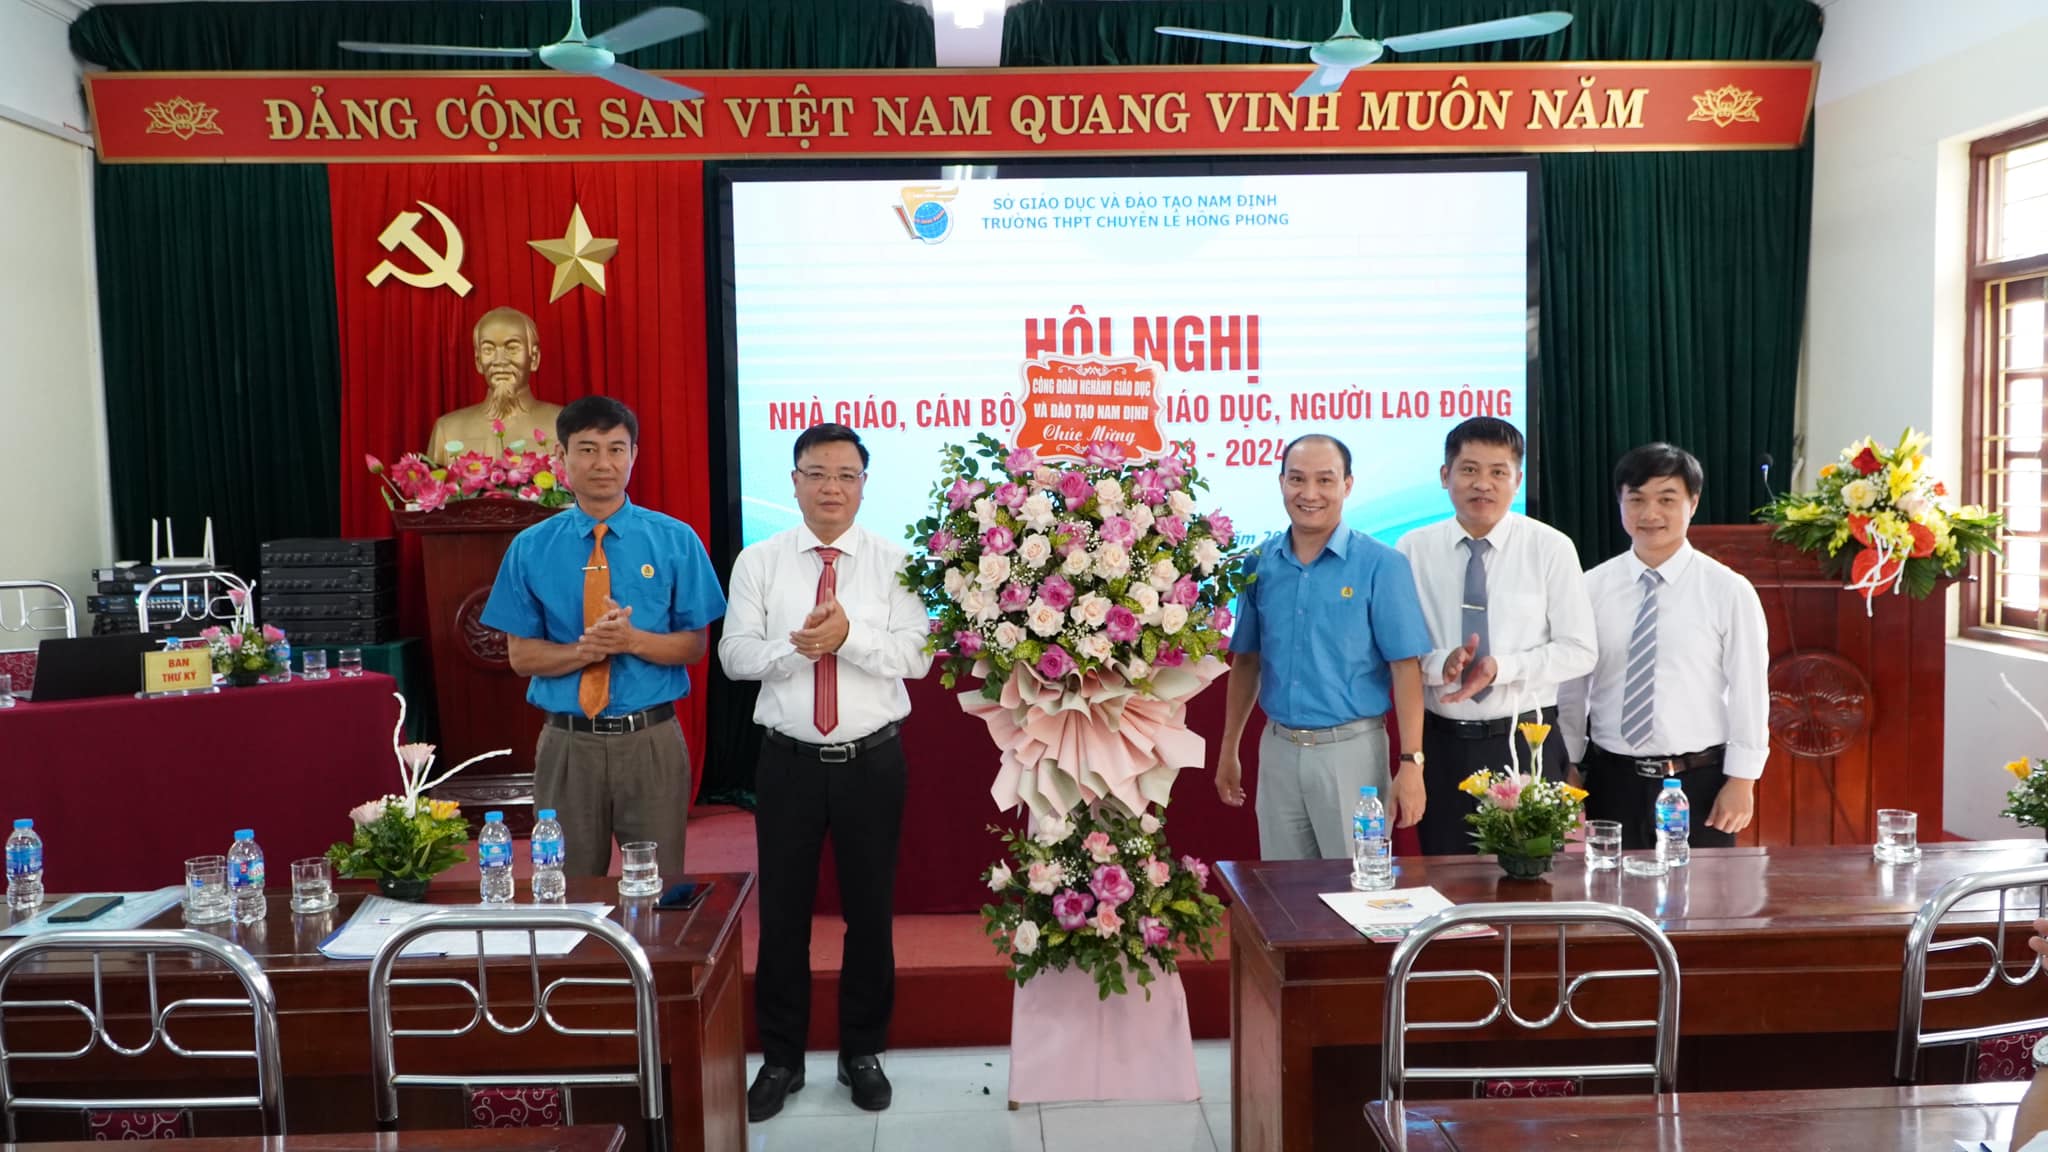 Hội nghị nhà giáo, cán bộ quản lý giáo dục, người lao động năm học 2023- 2024 của trường THPT chuyên Lê Hồng Phong